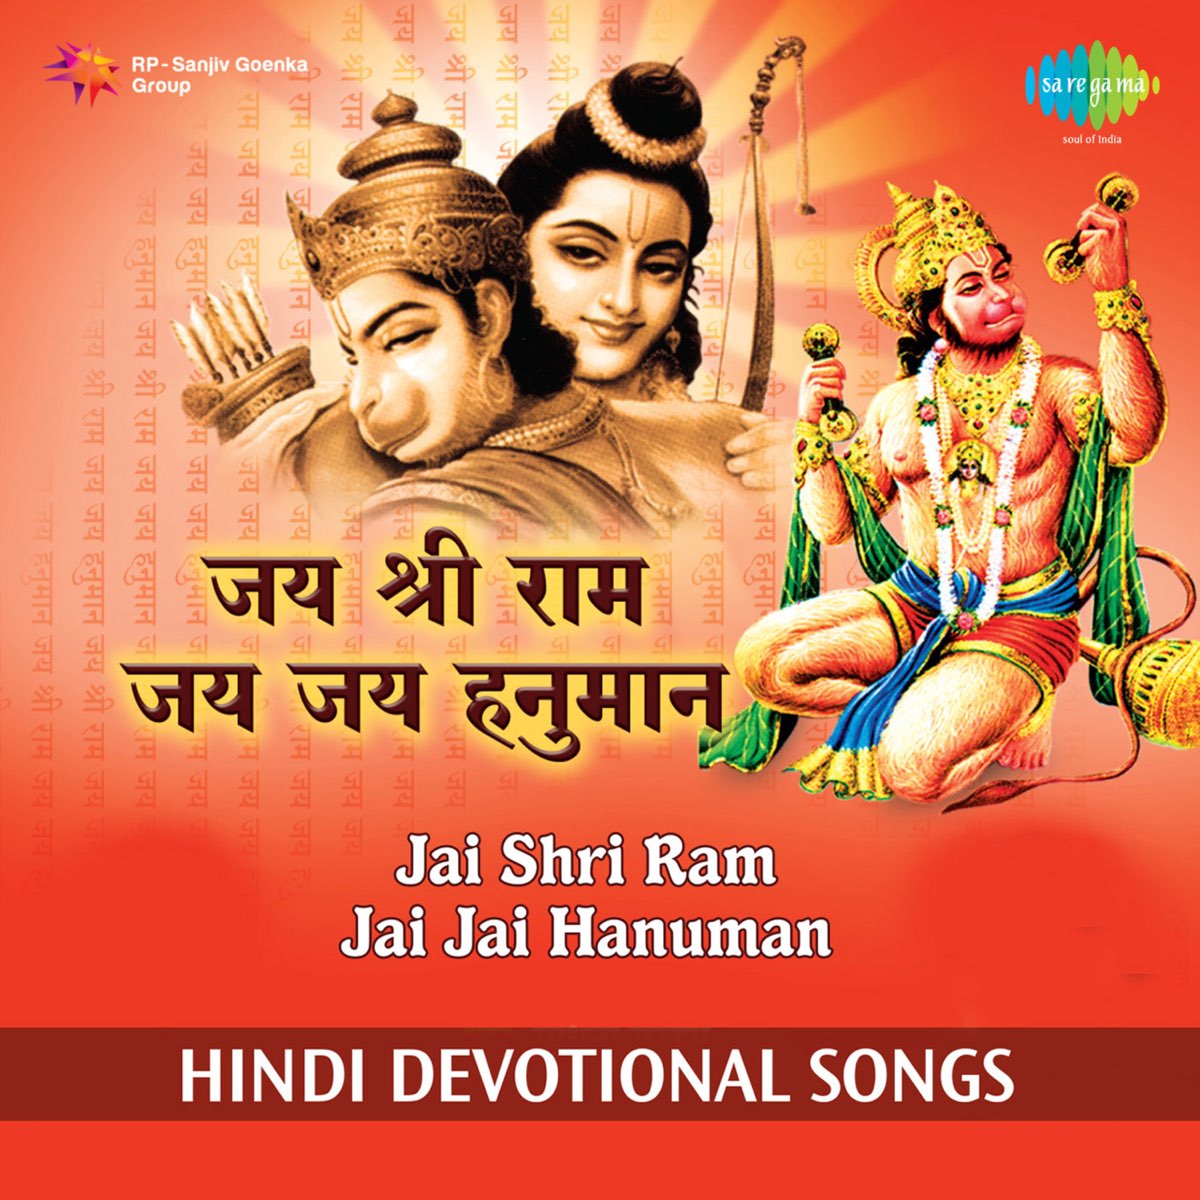 Jai Shri Ram Jai Jai Hanuman by Sadhana Sargam & Vijay Shankar on ...